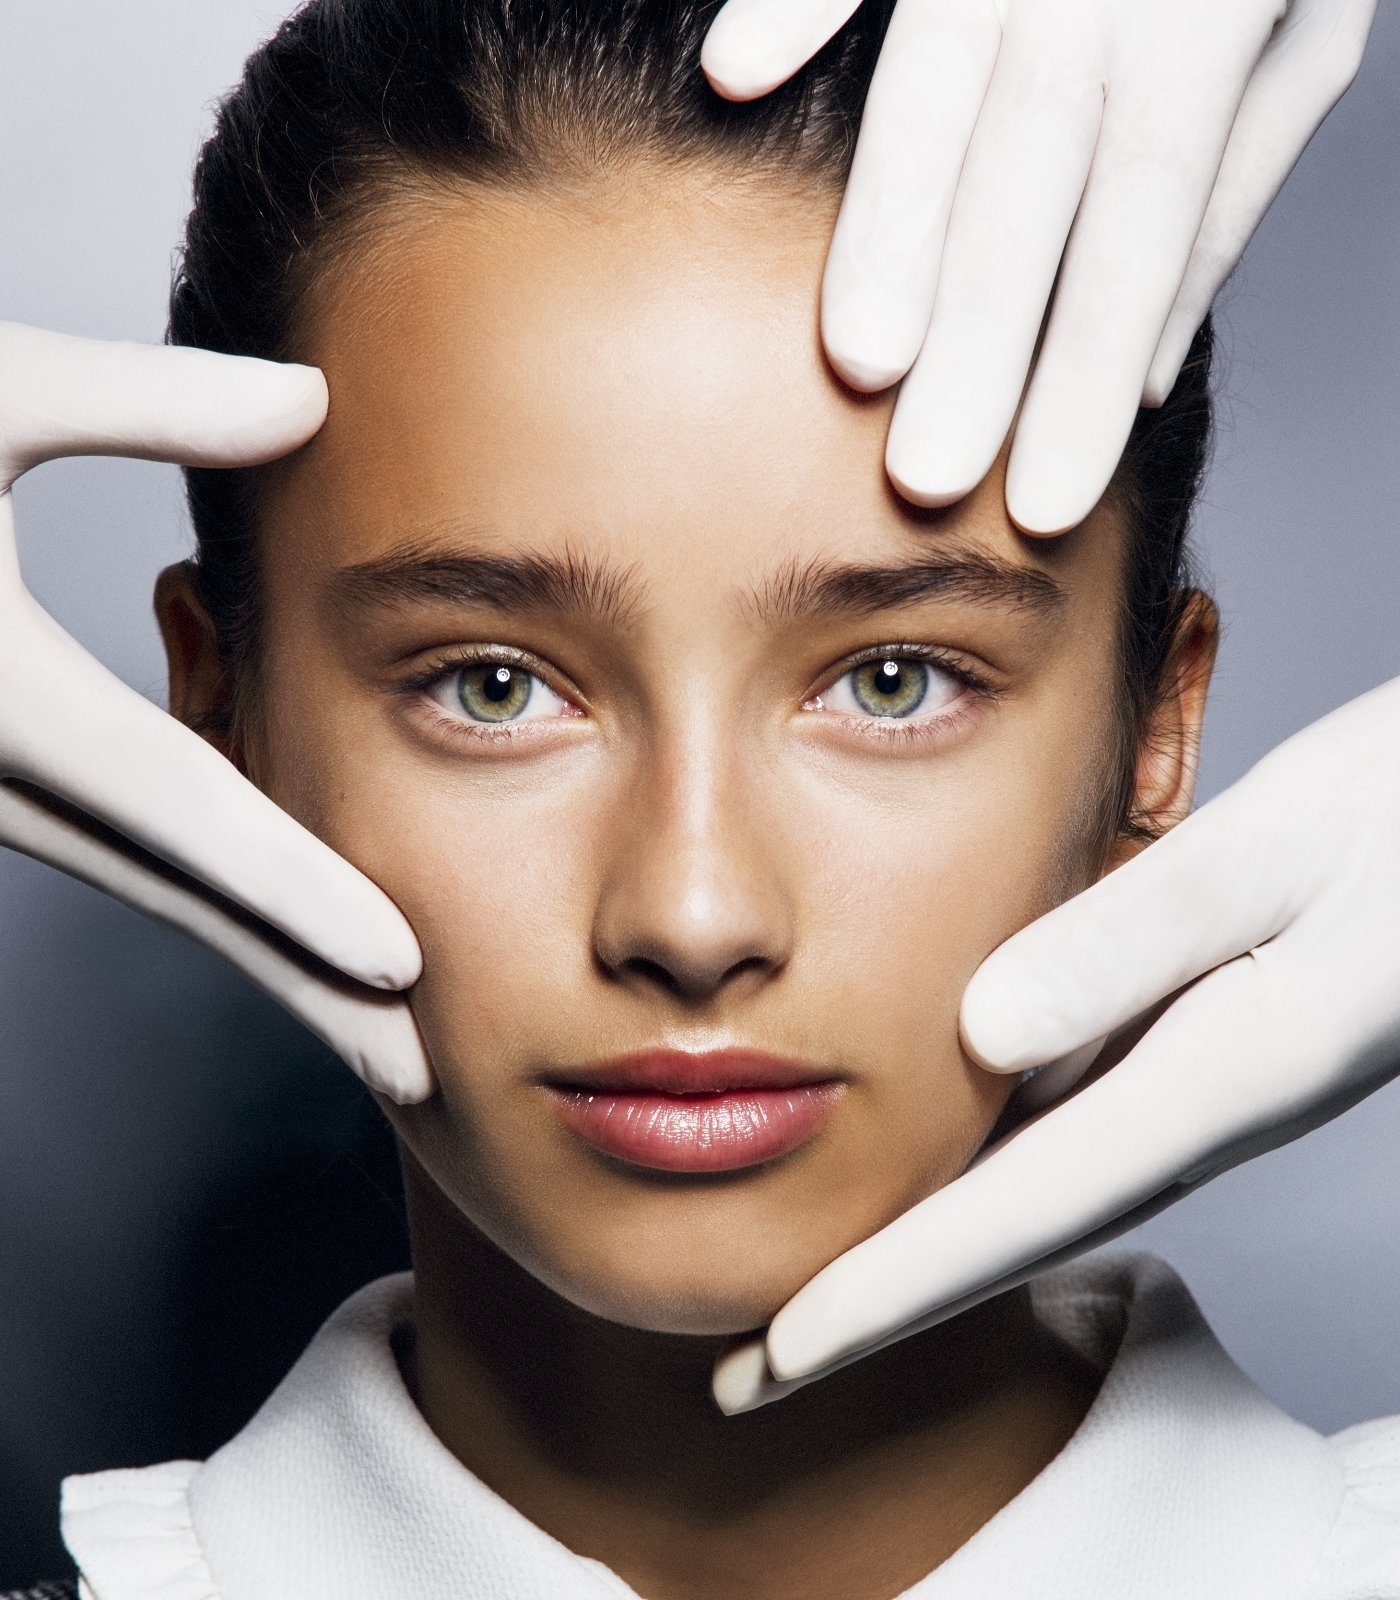 Las dermatólogas y expertas recomiendan un limpiador facial, una crema hidratante ligera y un protector solar para cuidar la piel adolescente.